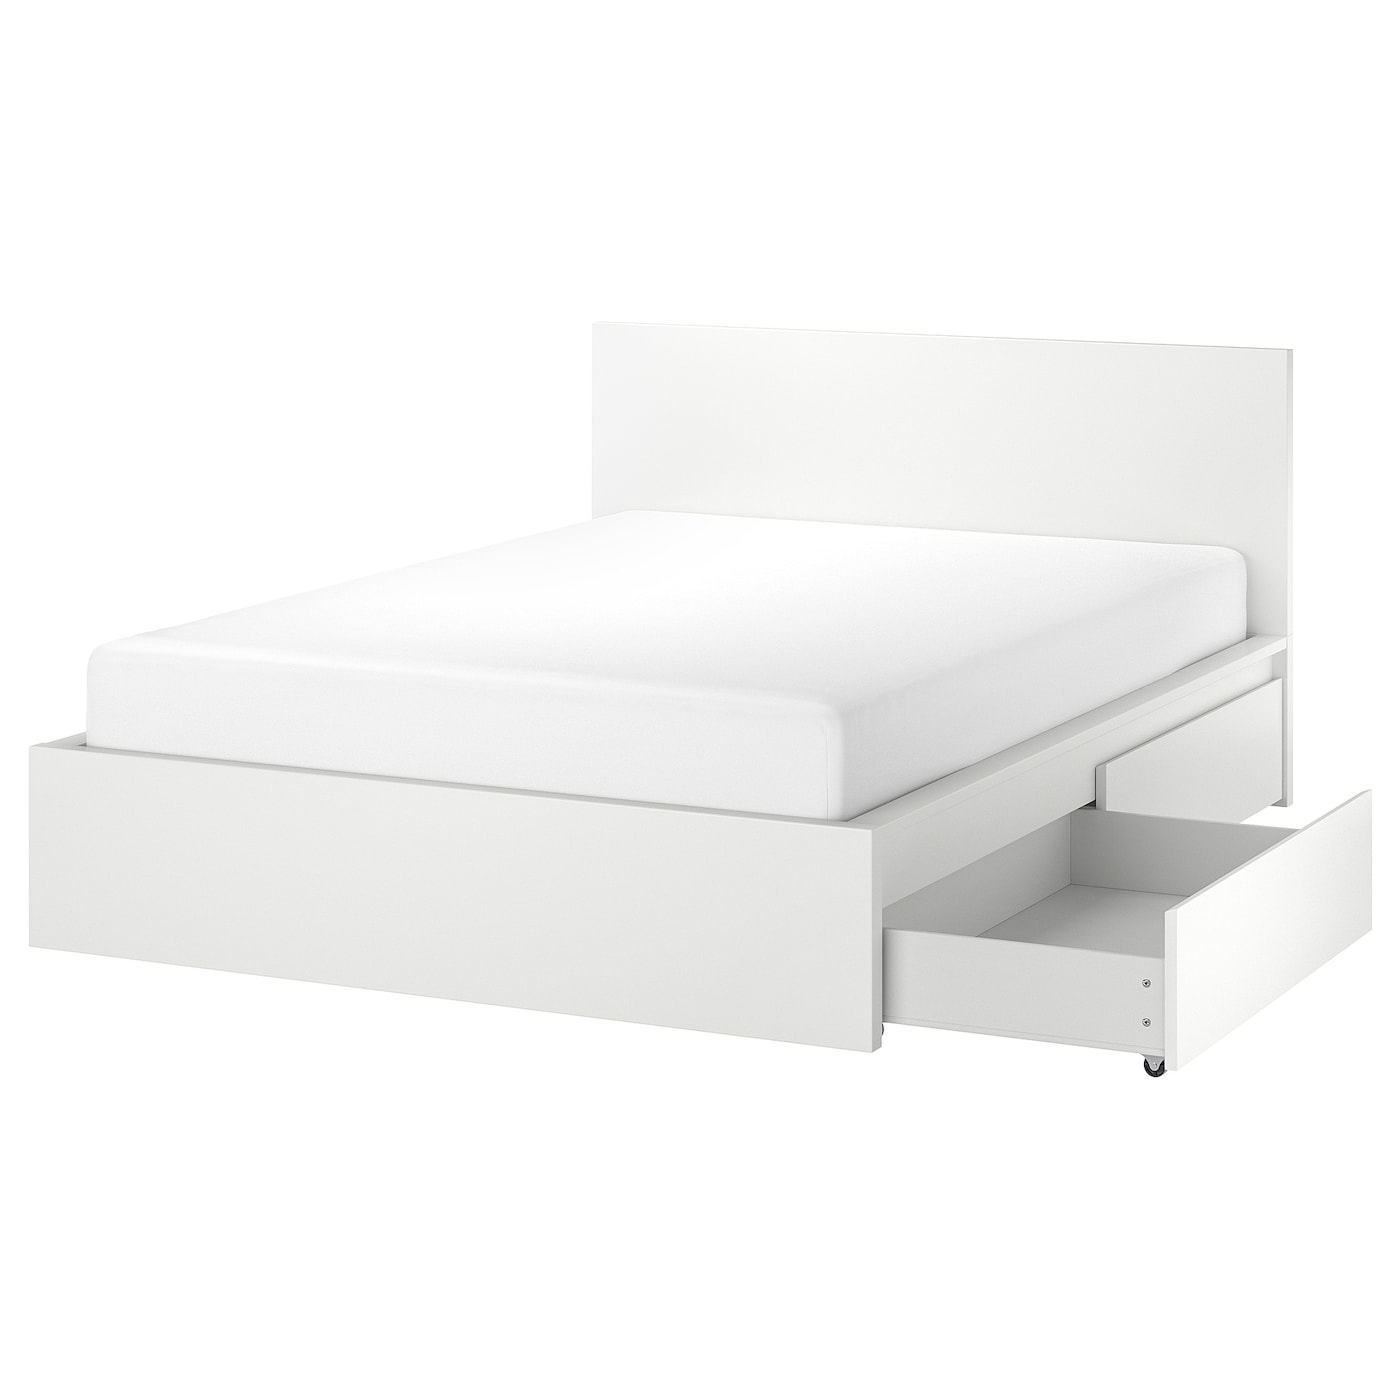 Каркас кровати с 4 ящиками для хранения - IKEA MALM, 160х200 см, белый МАЛЬМ ИКЕА